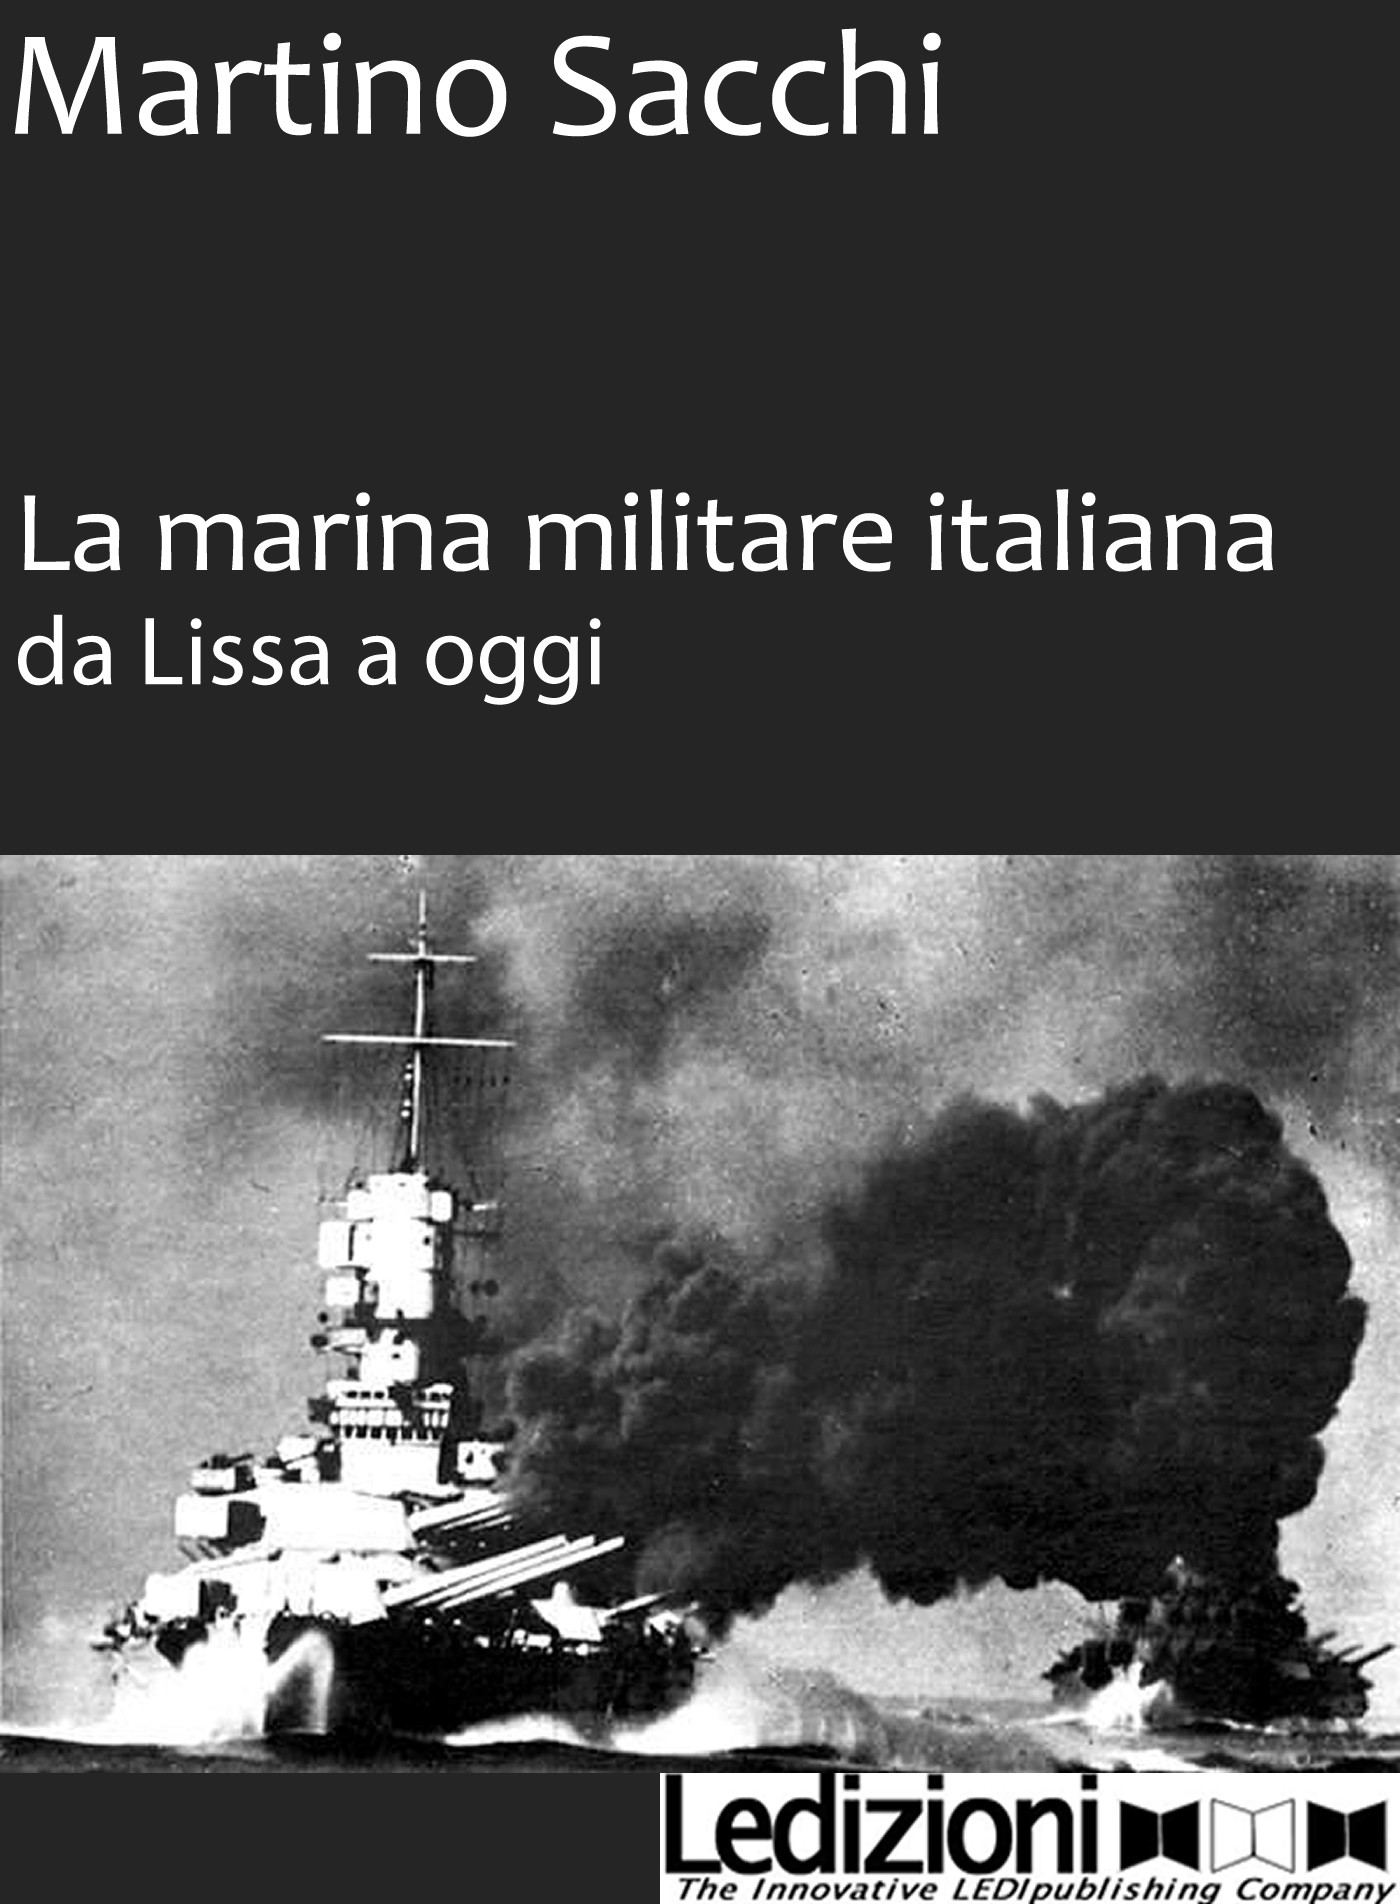 La Marina Militare iltaliana da Lissa a oggi - Librerie.coop